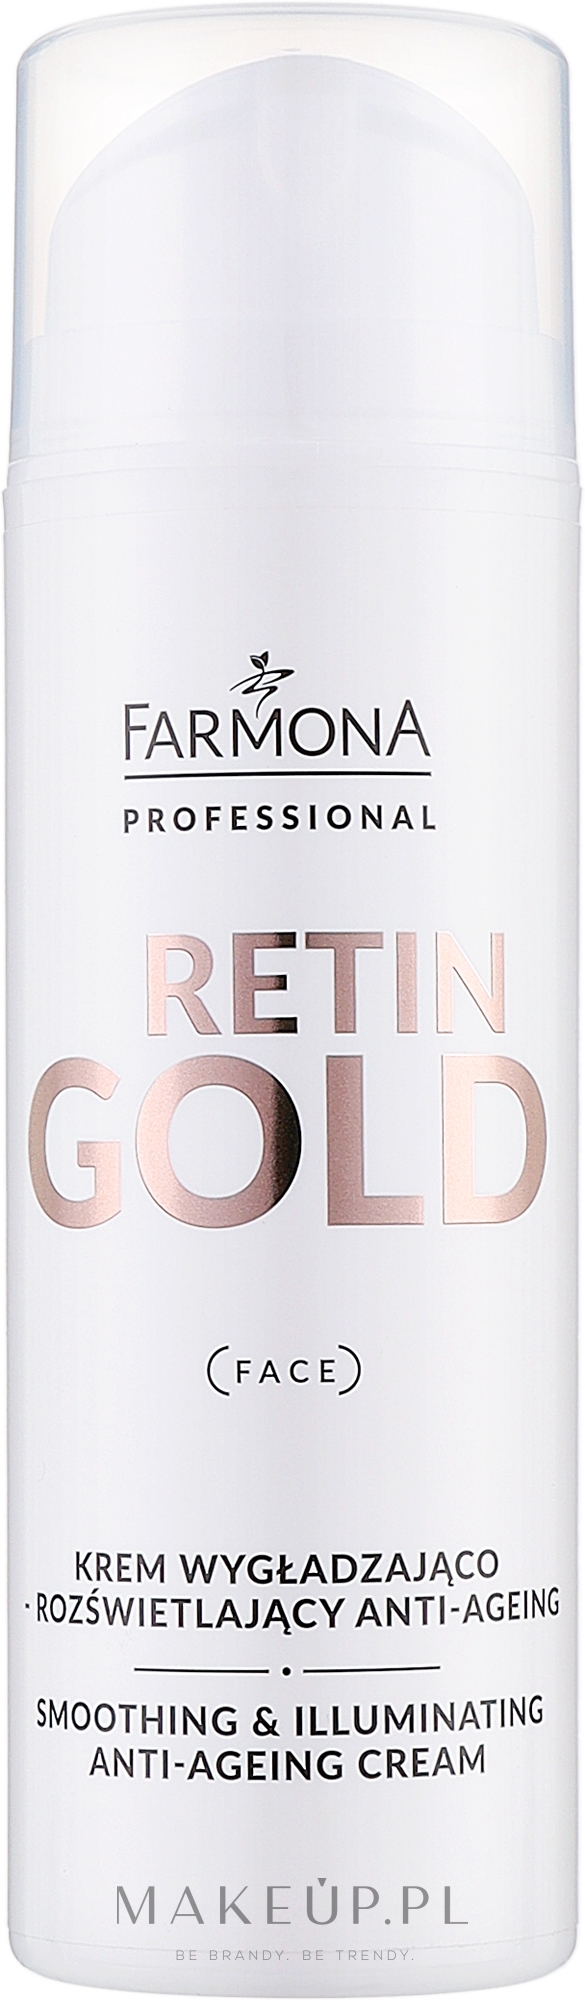 Krem wygładzająco-rozświetlający anti-ageing - Farmona Professional Retin Gold Smoothing & Illuminating Anti-Ageing Cream — Zdjęcie 150 ml